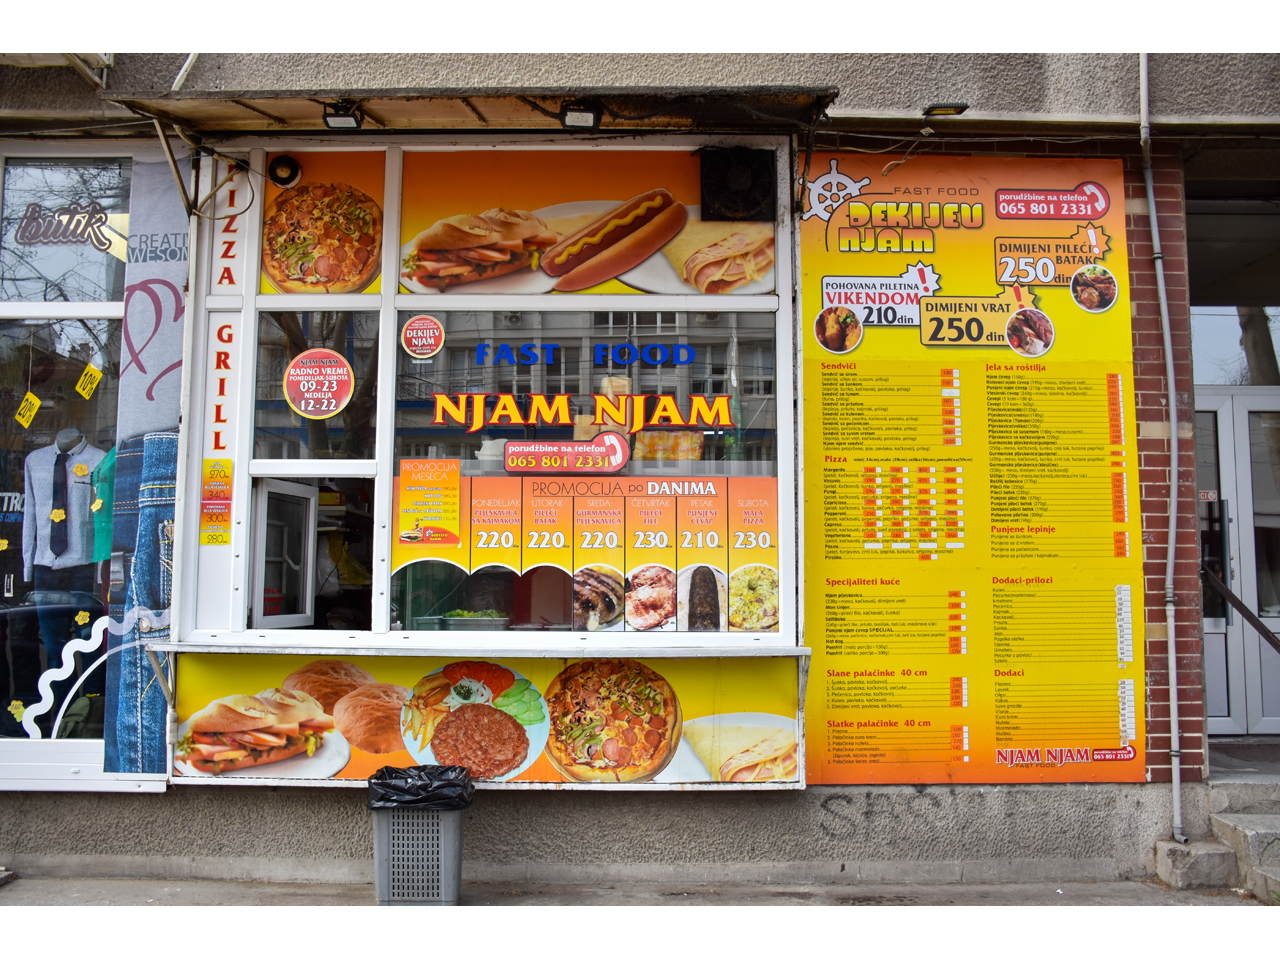 DEKIJEV NJAM (EX NJAM NJAM) Fast food Belgrade - Photo 2